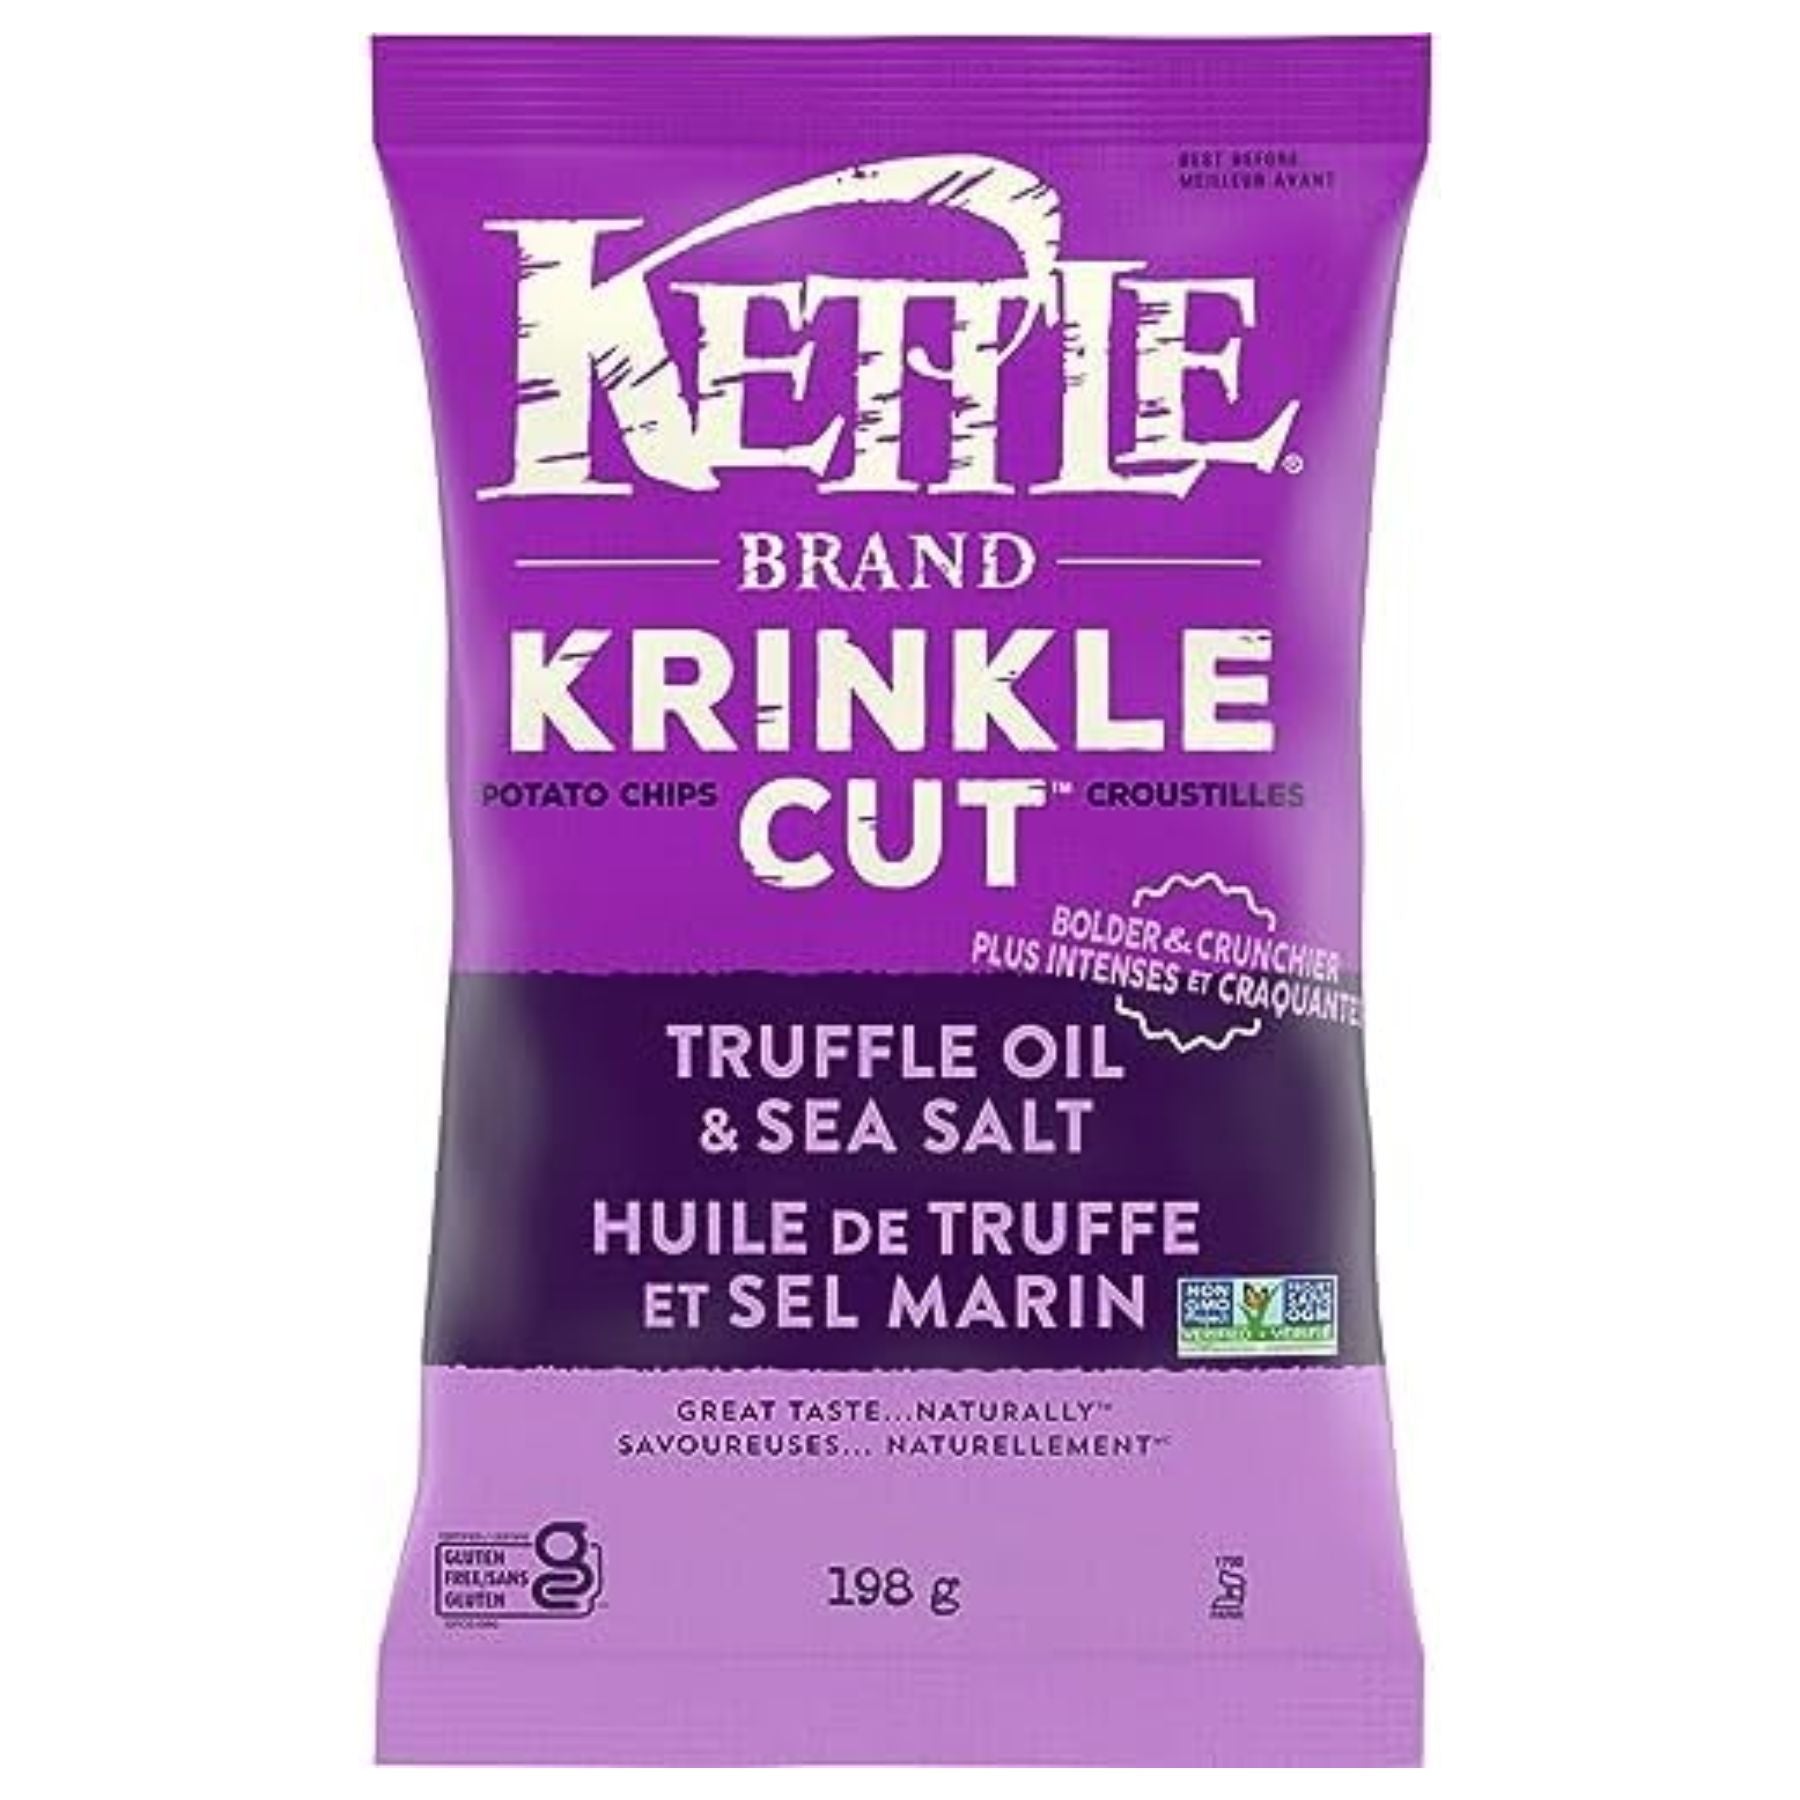 Kettle Krinkle Cut Potato Chips Truffle + Sea Salt 198g